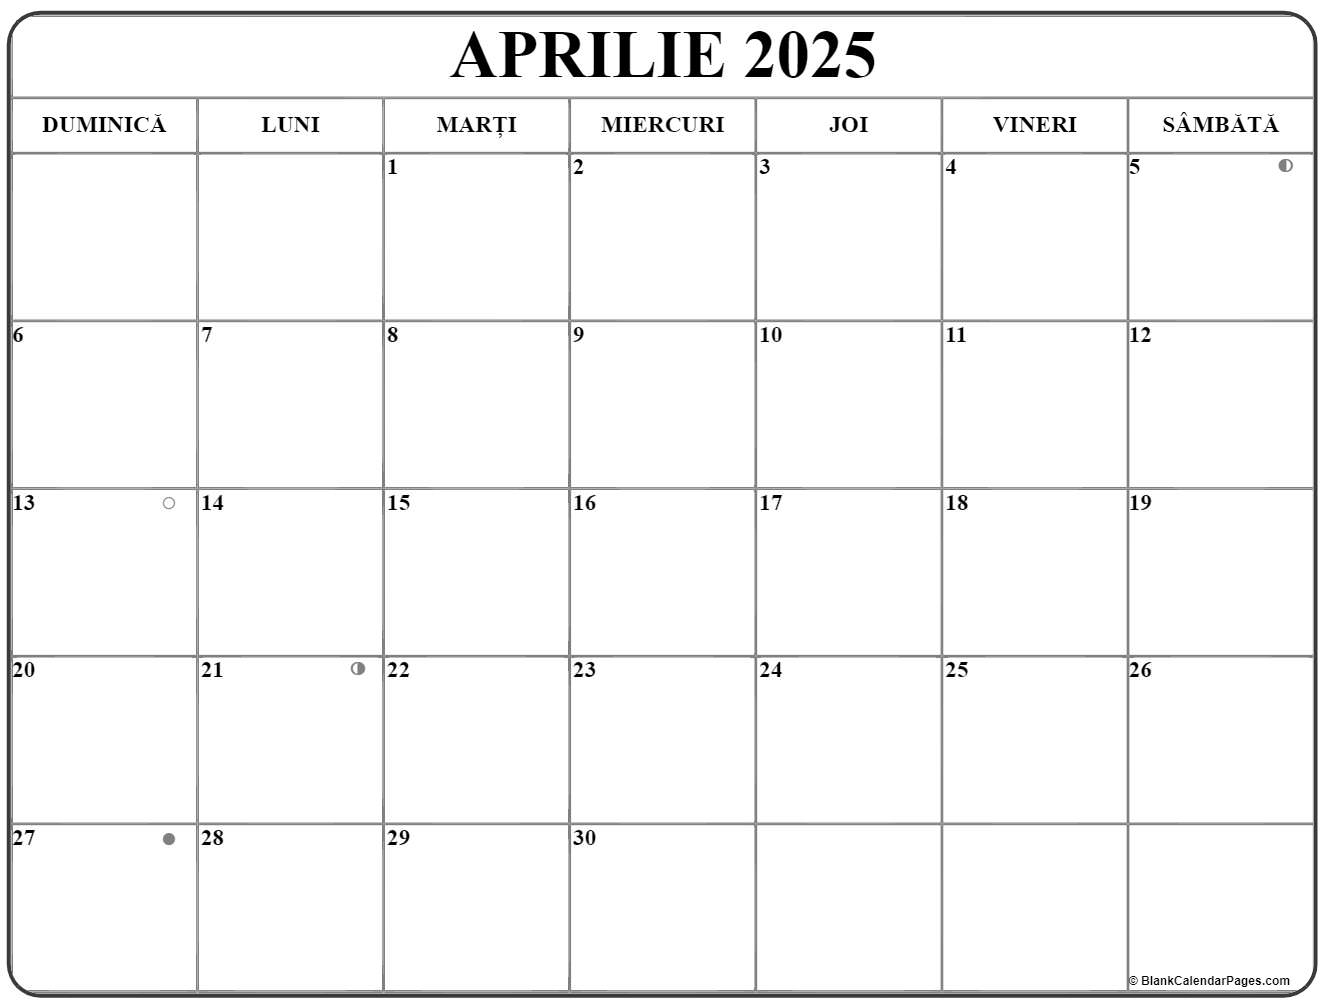 Calendarul aprilie 2025 imprimabil gratuit in romana